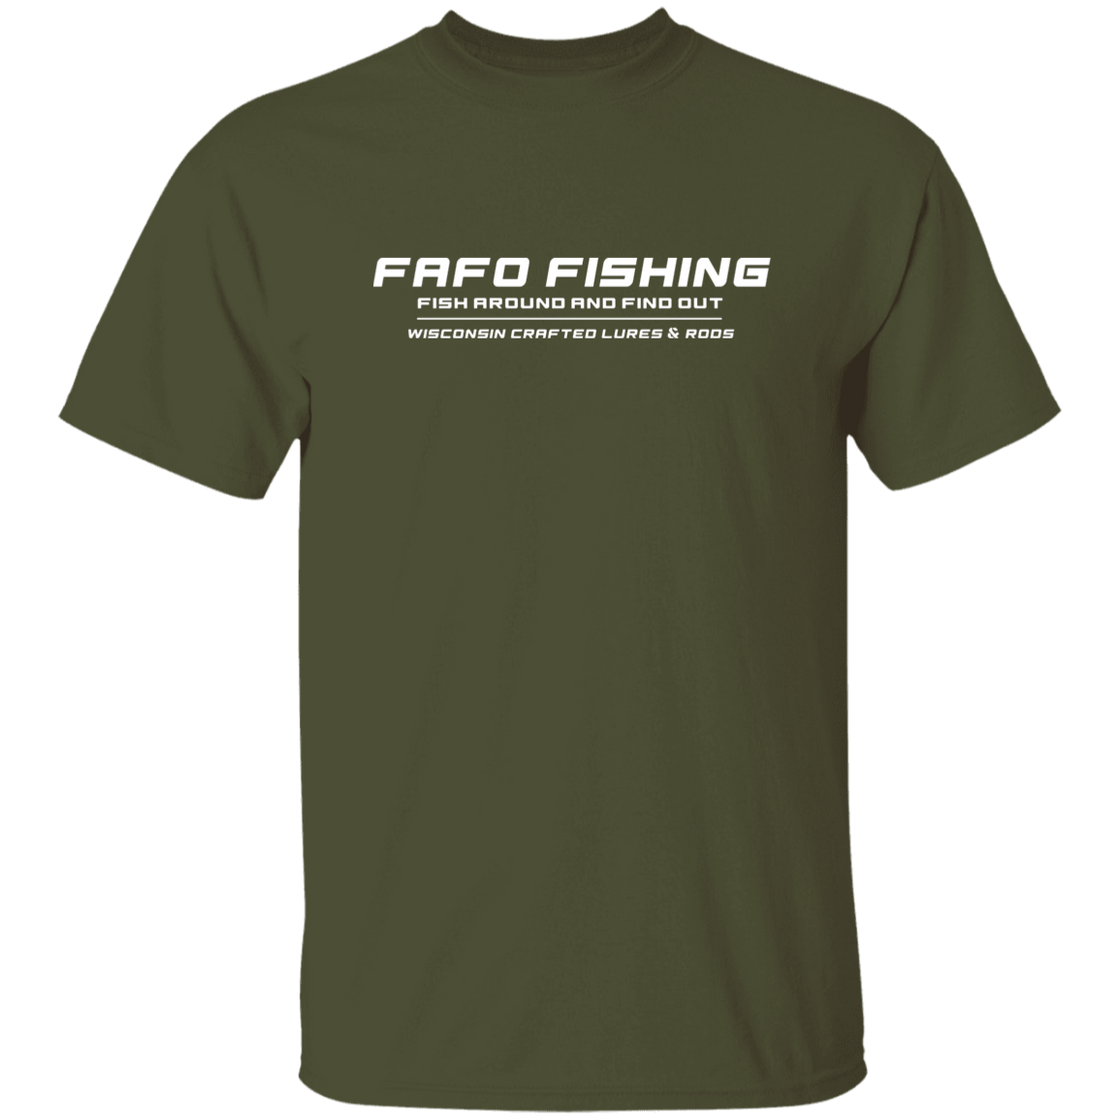 FAFO FISHING T-Shirt Whit Logo